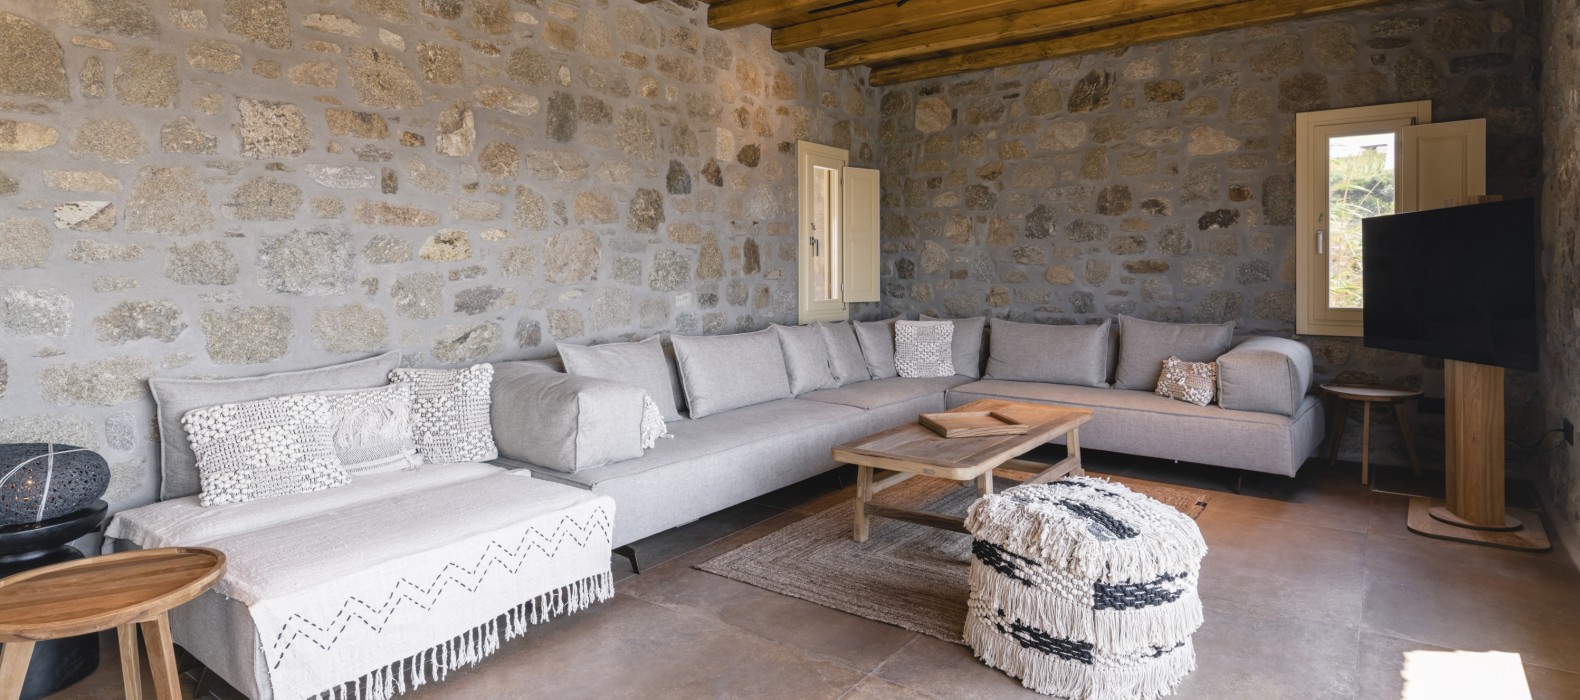 Living room of Villa Kalimera in Mykonos